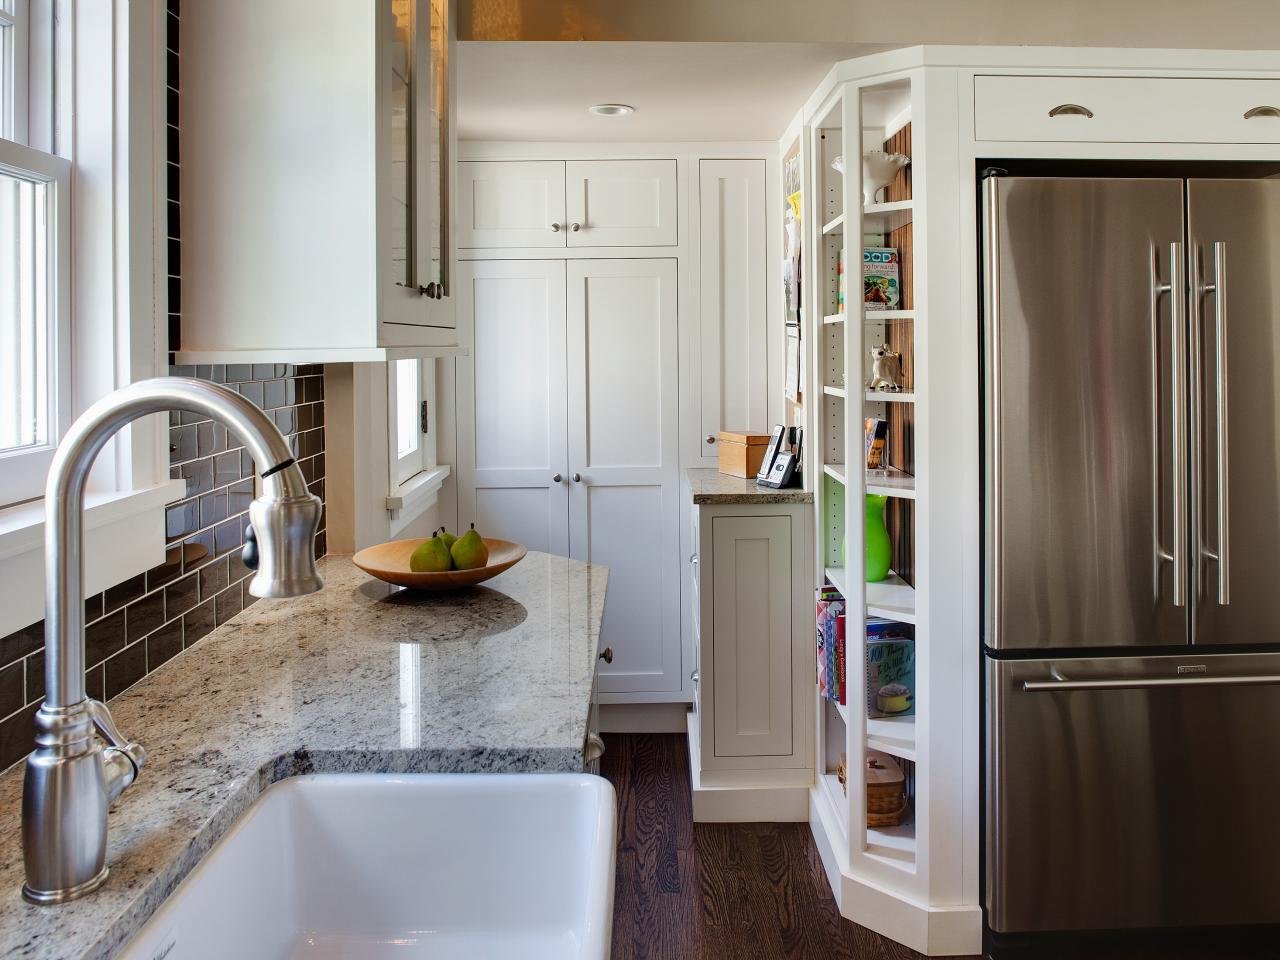 Холодильник под окном на кухне: как скрыть своими руками, инструкция, фото и видео-уроки